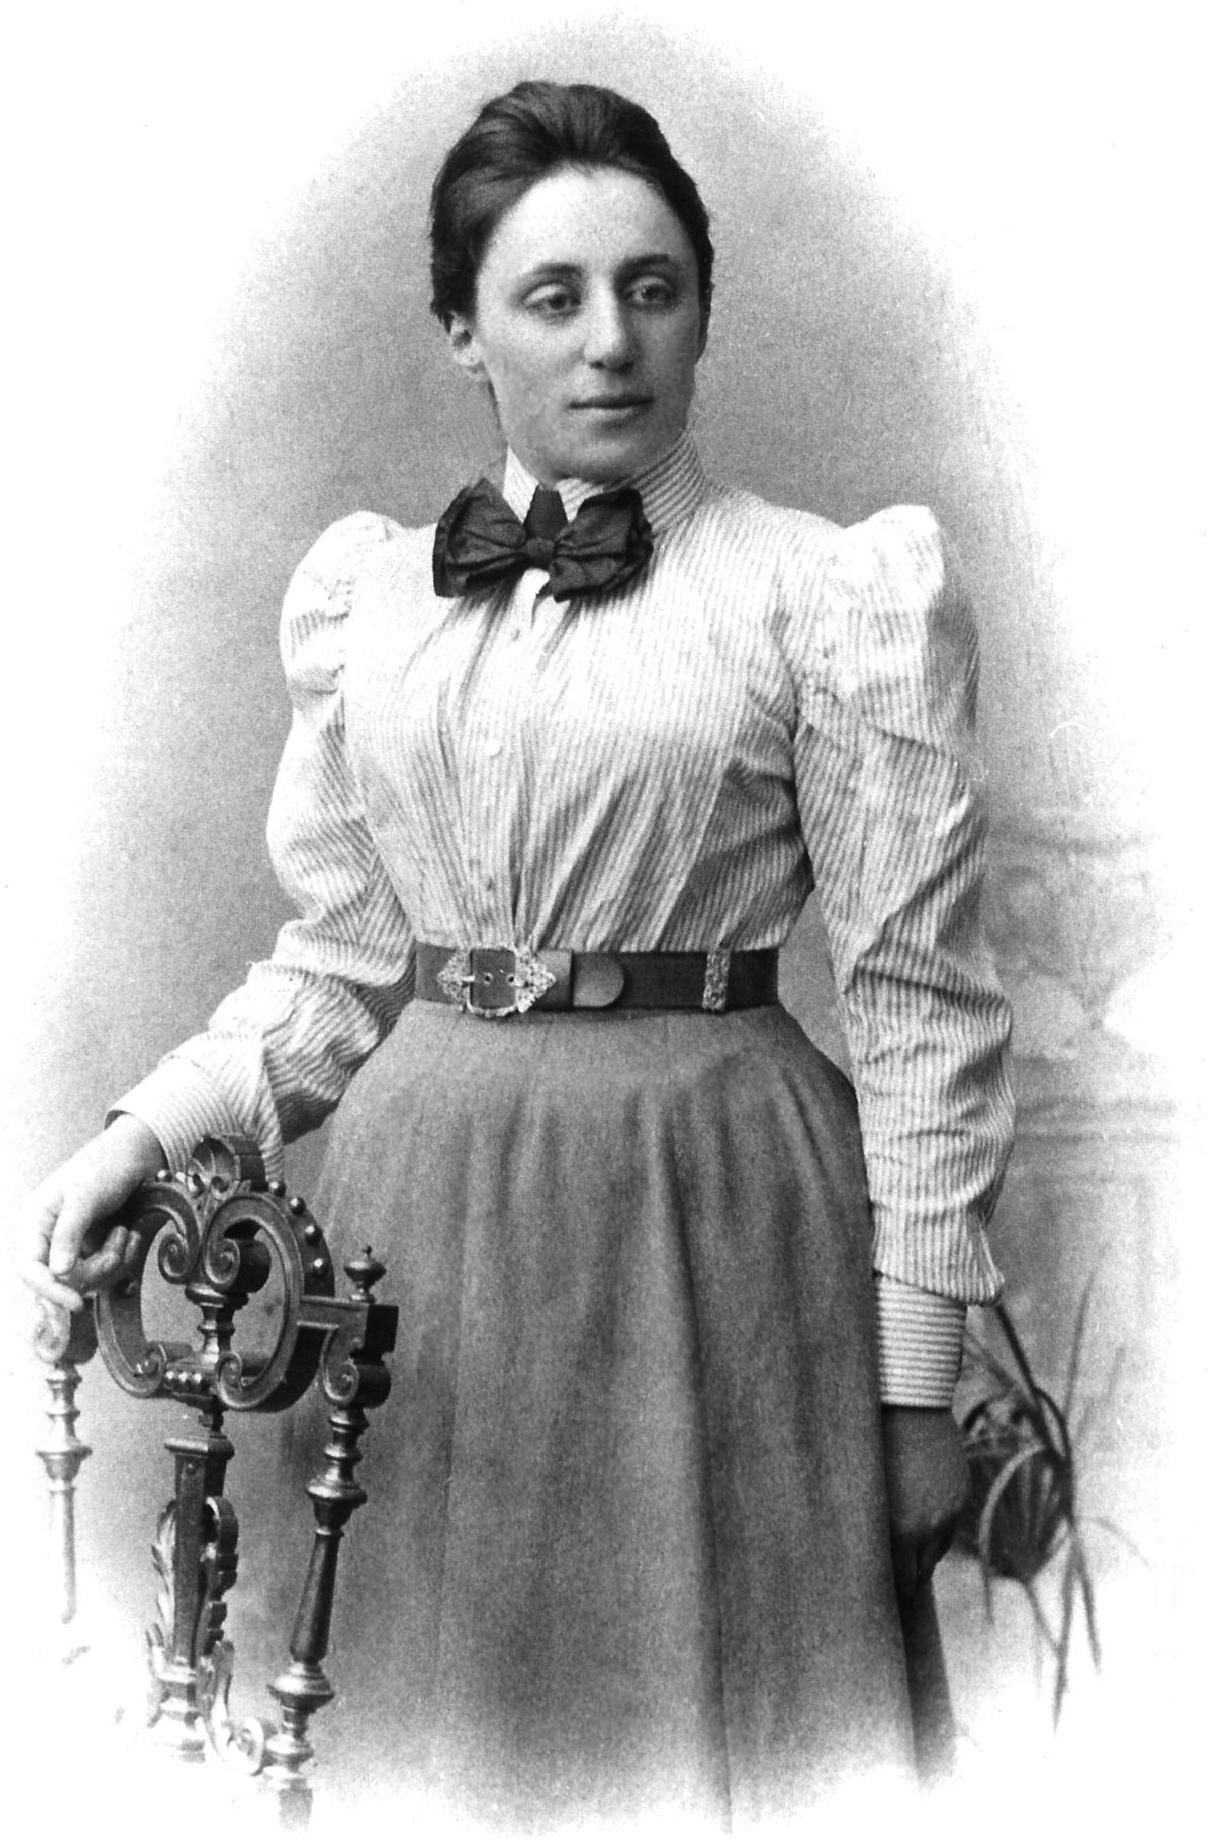 Image of Emmy at https://en.wikipedia.org/wiki/Emmy_Noether#/media/File:Noether.jpg